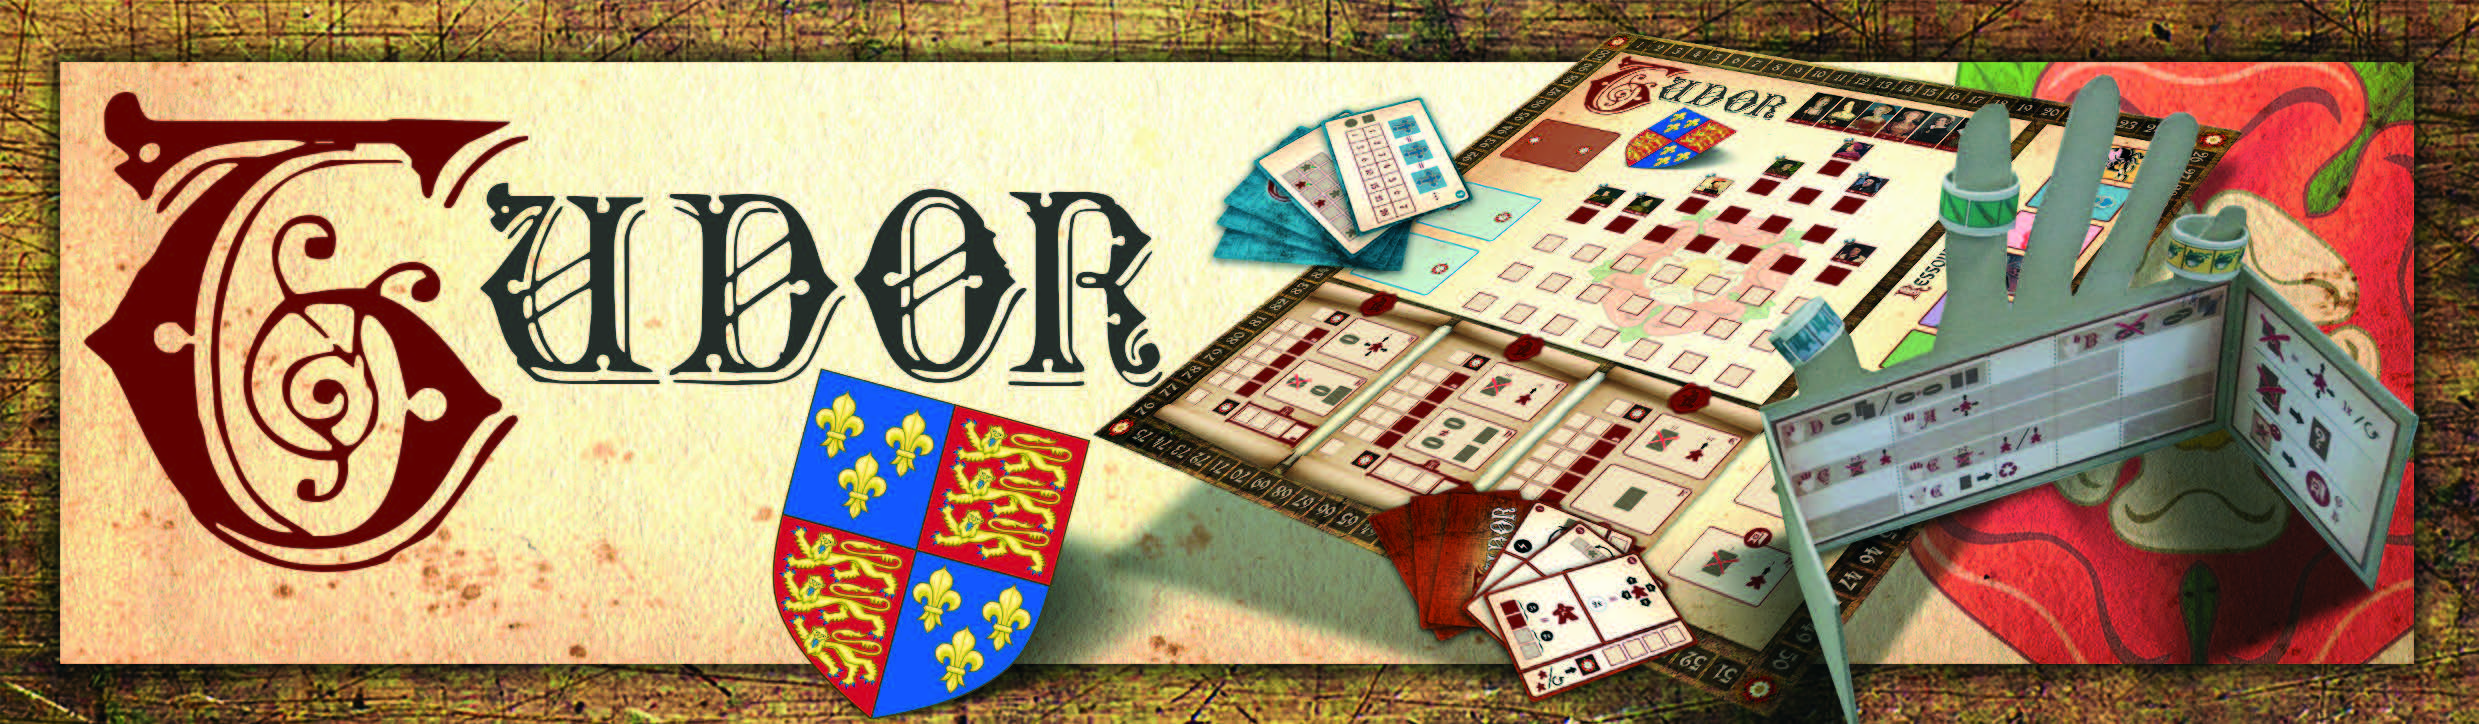 Tudor - Weitere Details zum kommenden Corax-Spiel